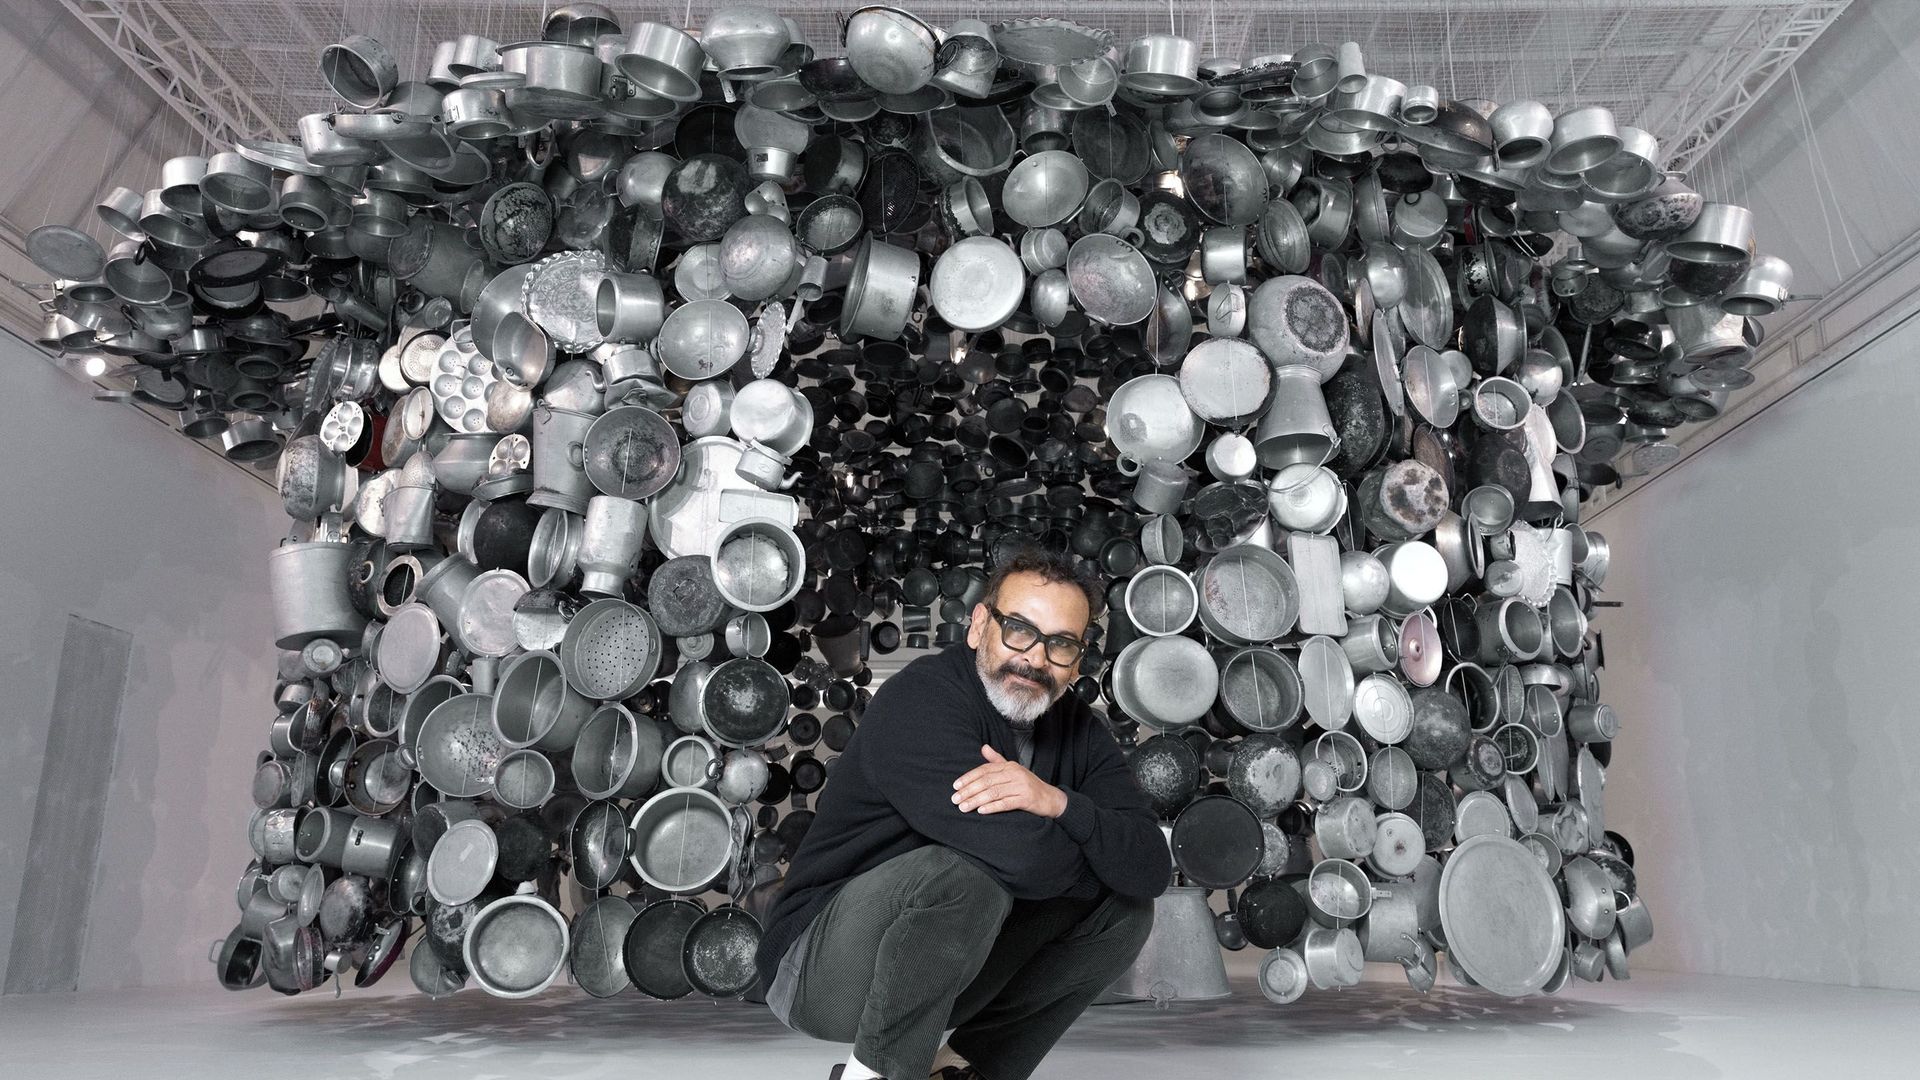 Subodh Gupta est le huitième artiste invité dans le cadre de la "carte blanche" artistique que propose Le Bon Marché, jusqu'au 19 février.